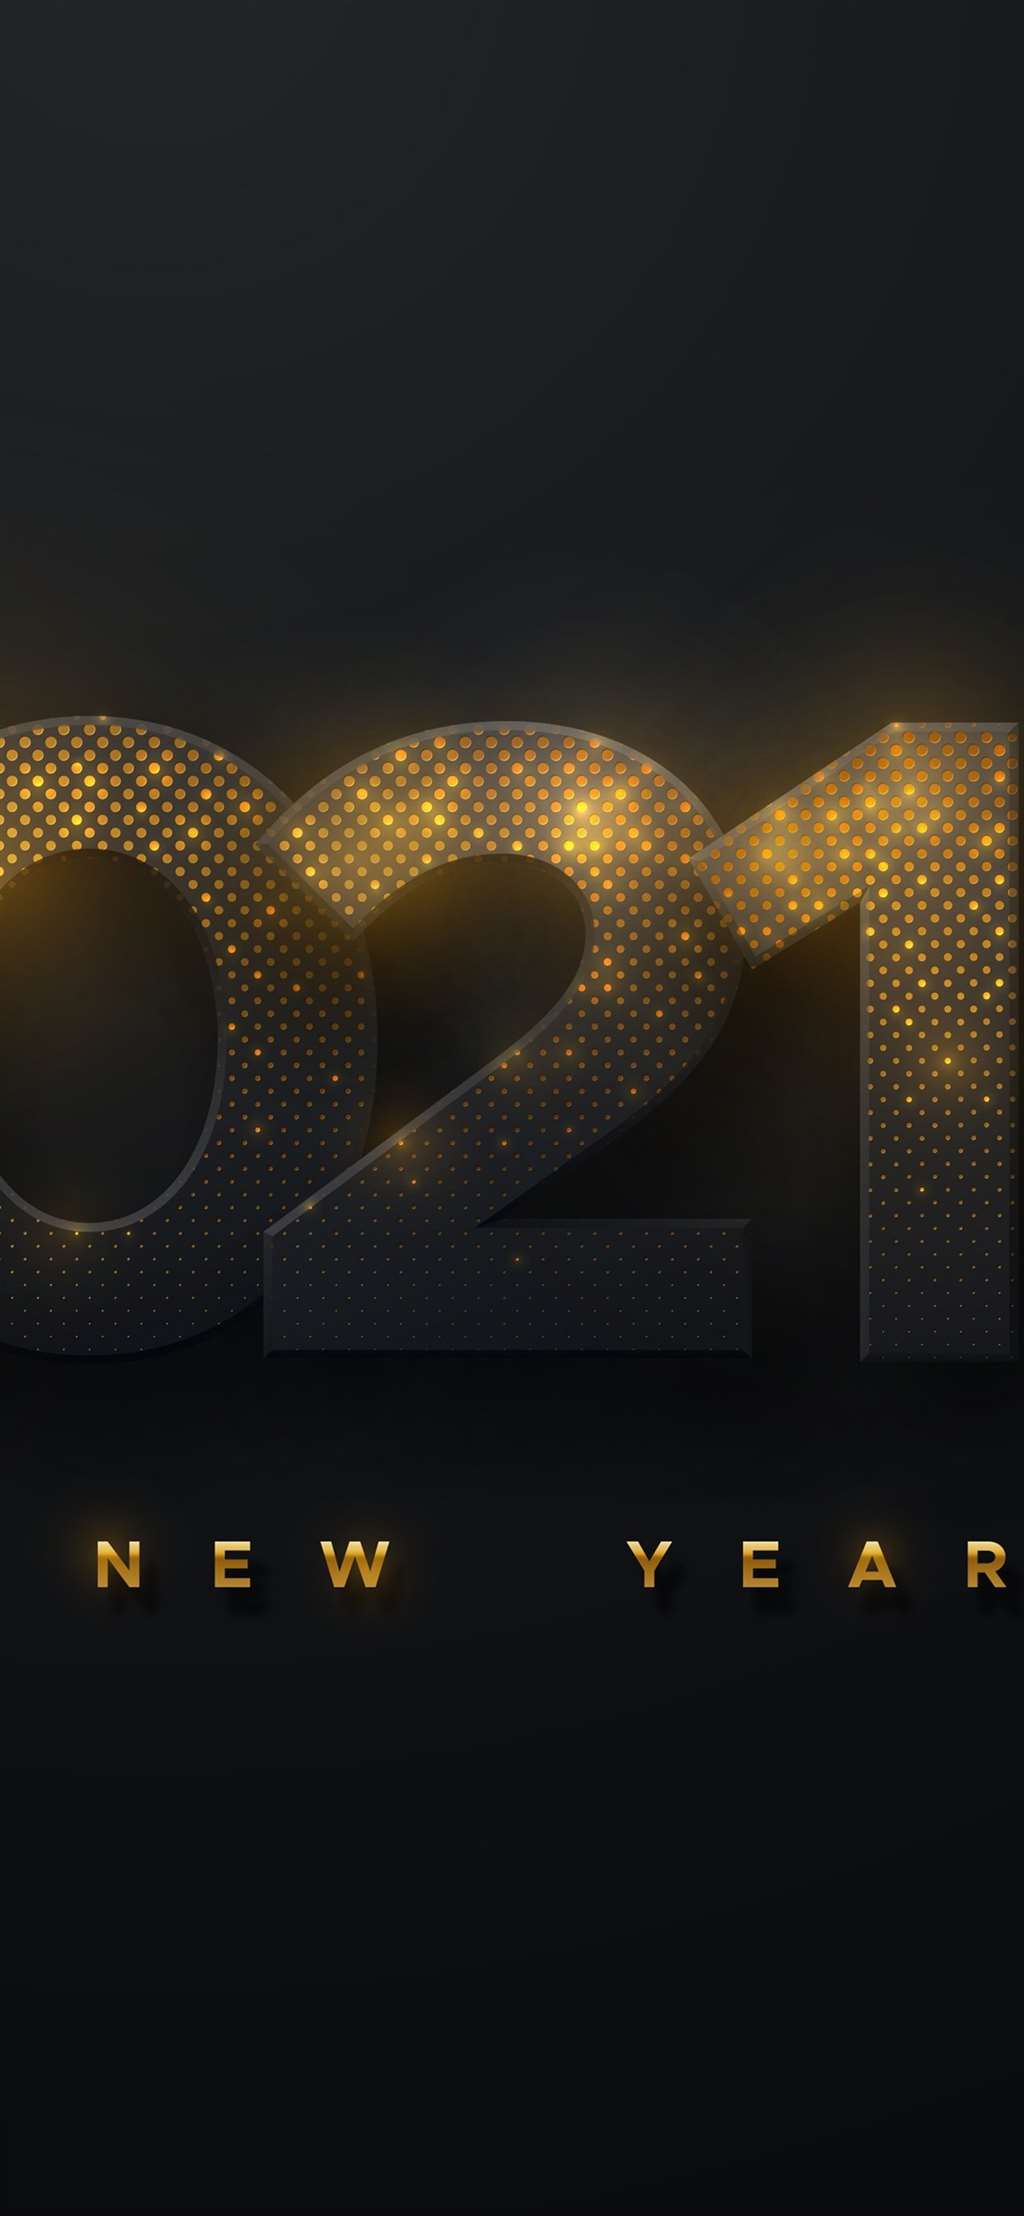 2021年新年快乐,黑色背景,金色的光芒 iphone 壁纸